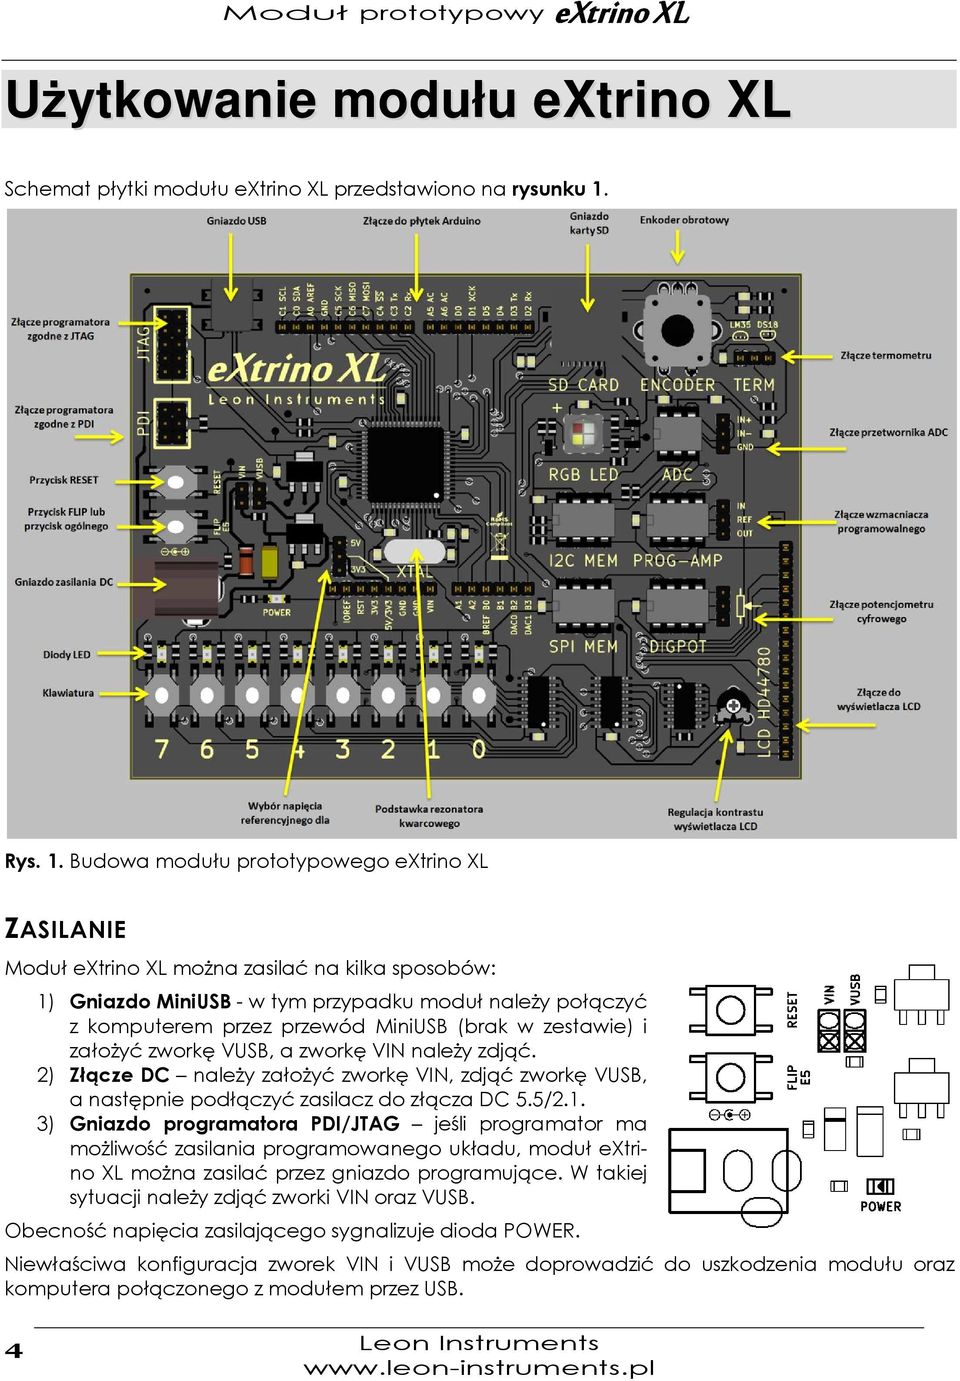 Budowa modułu prototypowego extrino XL ZASILANIE Moduł extrino XL można zasilać na kilka sposobów: 1) Gniazdo MiniUSB - w tym przypadku moduł należy połączyć z komputerem przez przewód MiniUSB (brak